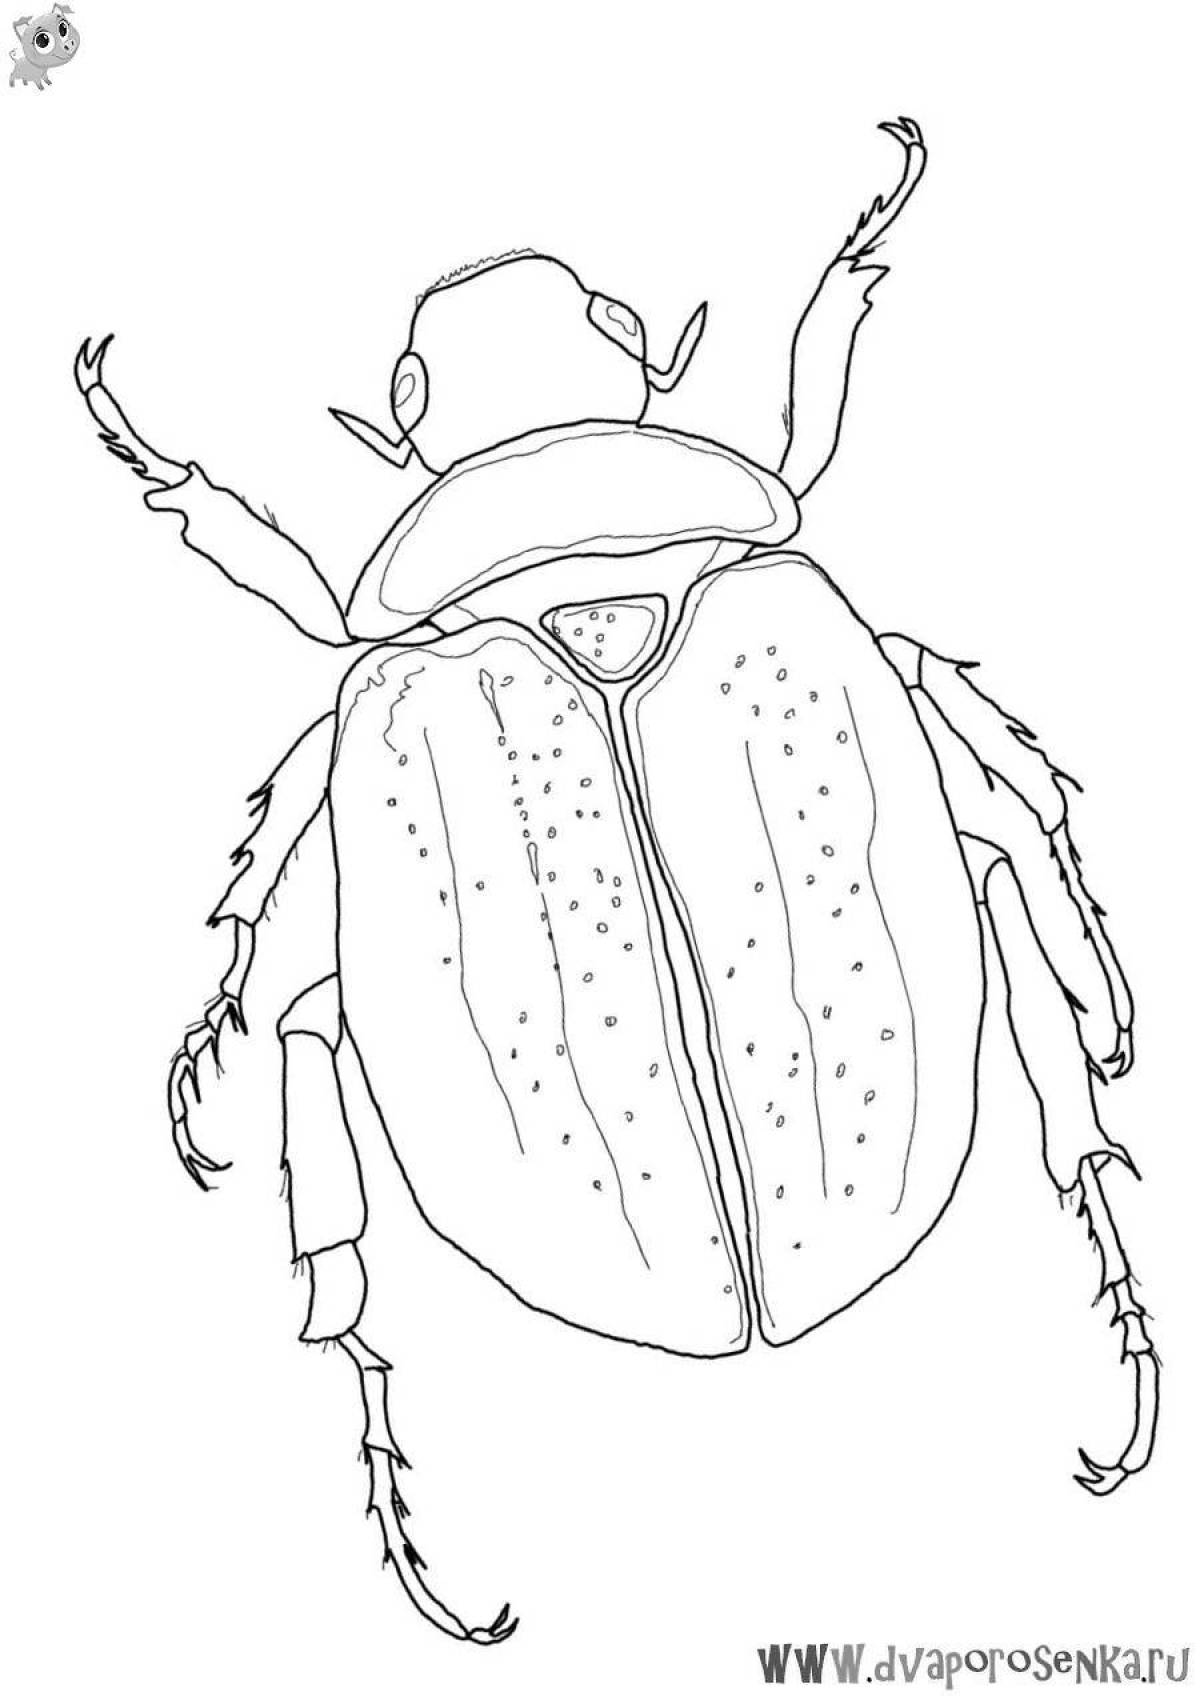 Фото Игривая страница раскраски майского жука